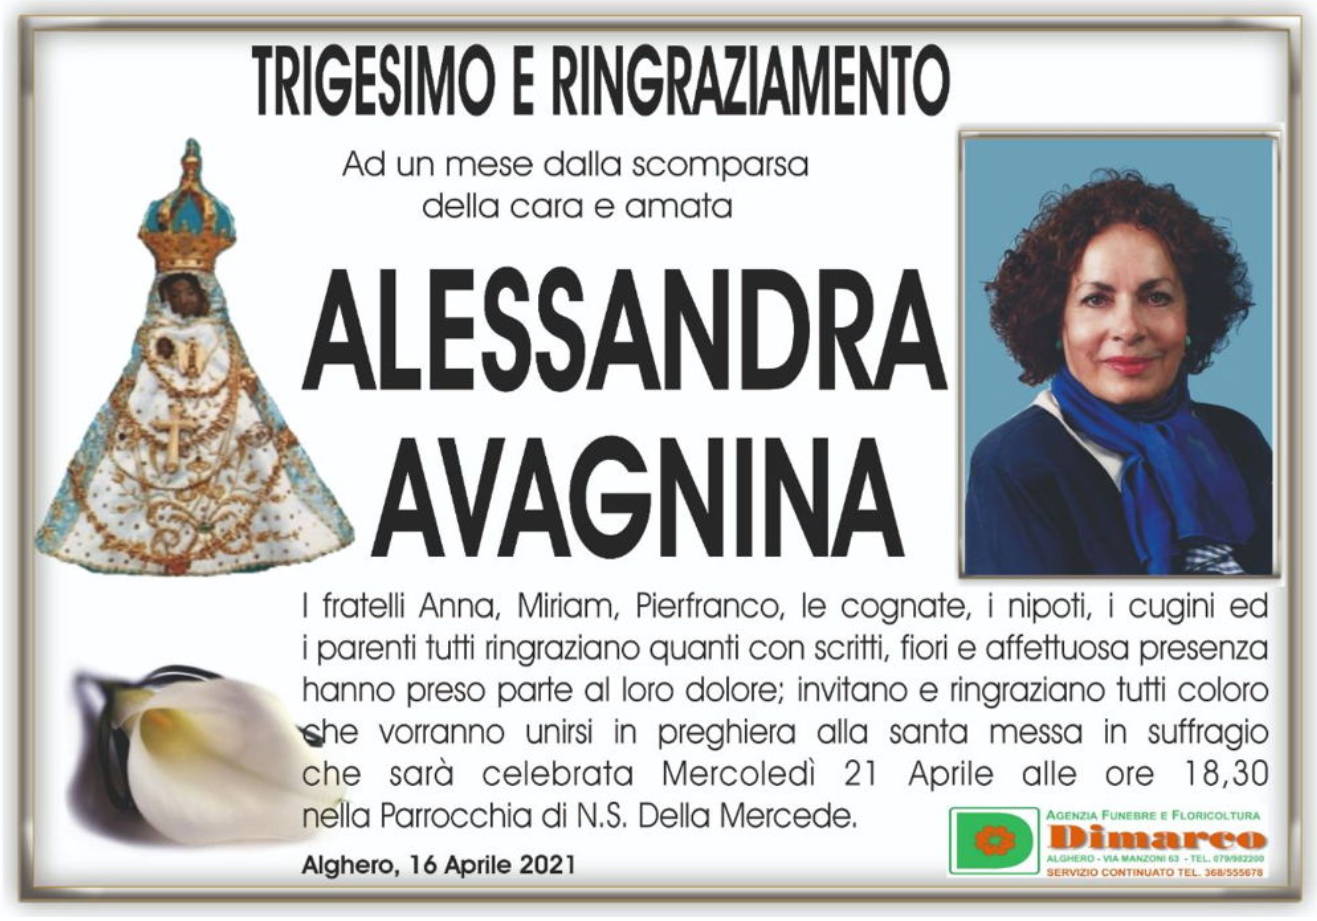 Alessandra Avagnina